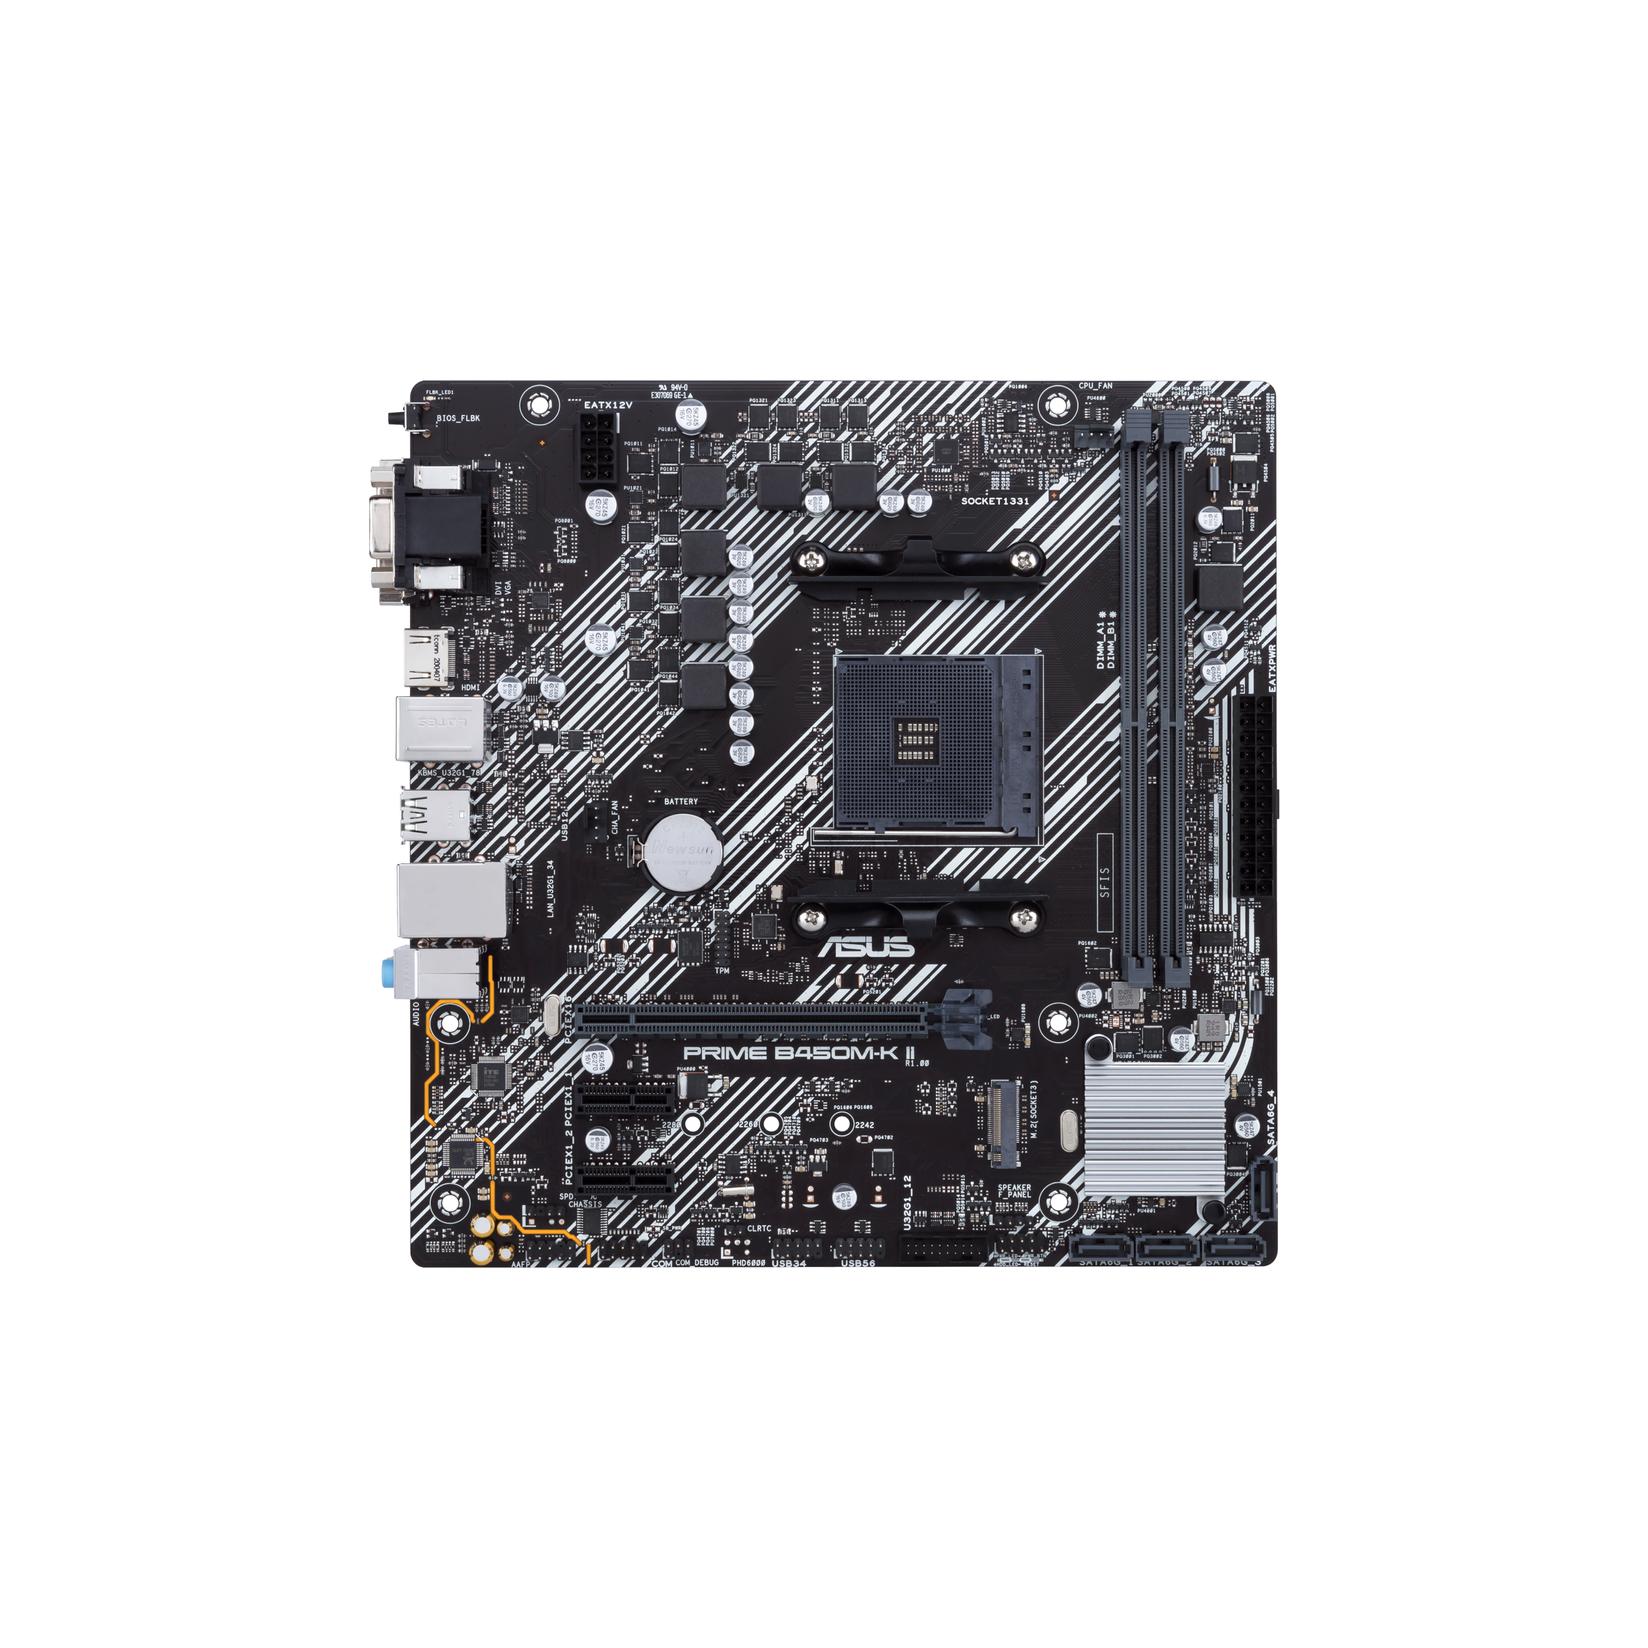 Selected image for ASUS Prime B450M-K II AMD B450 Socket AM4 mikro ATX